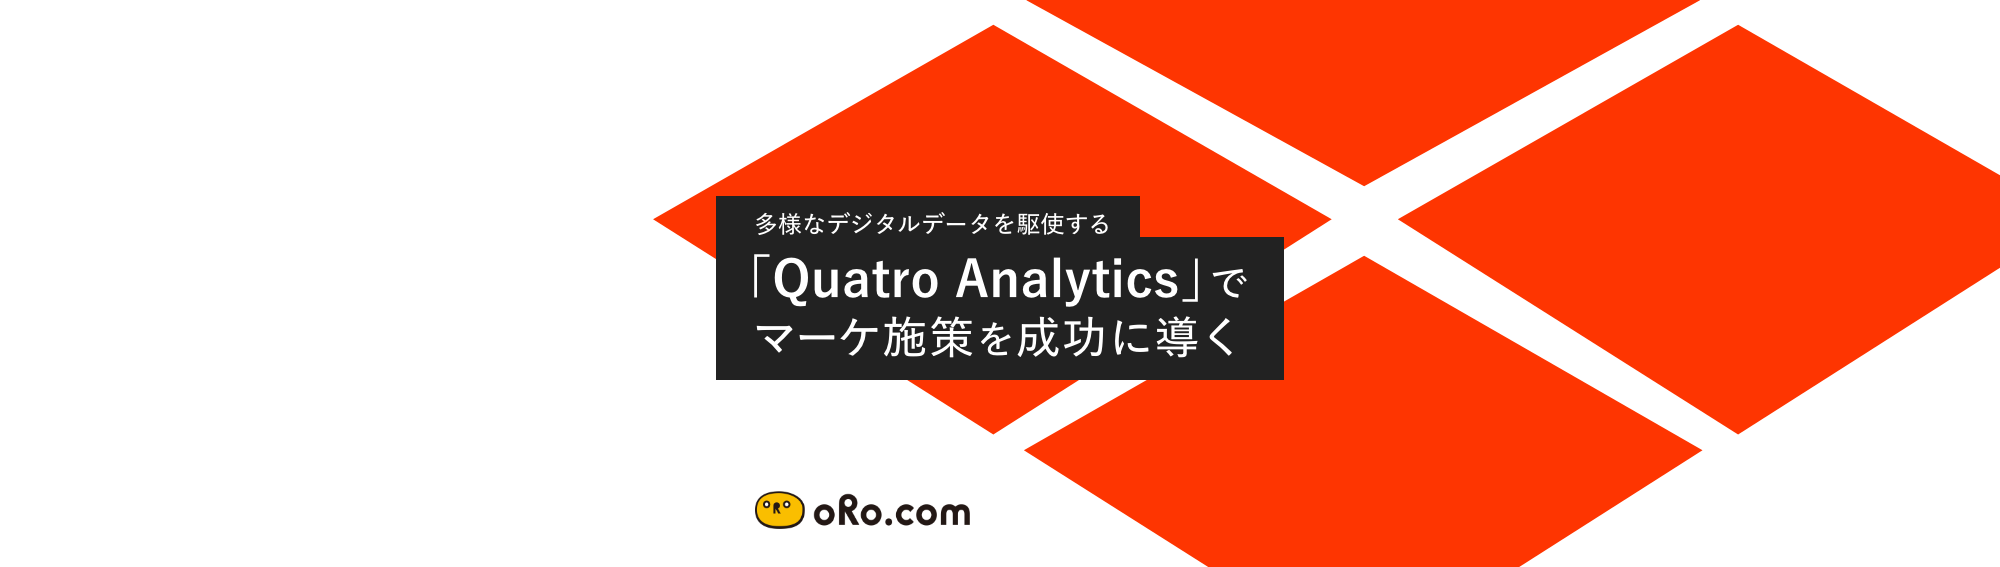 オロ、多様なデジタルデータを駆使する独自のフレームワーク「Quatro Analytics」を開発